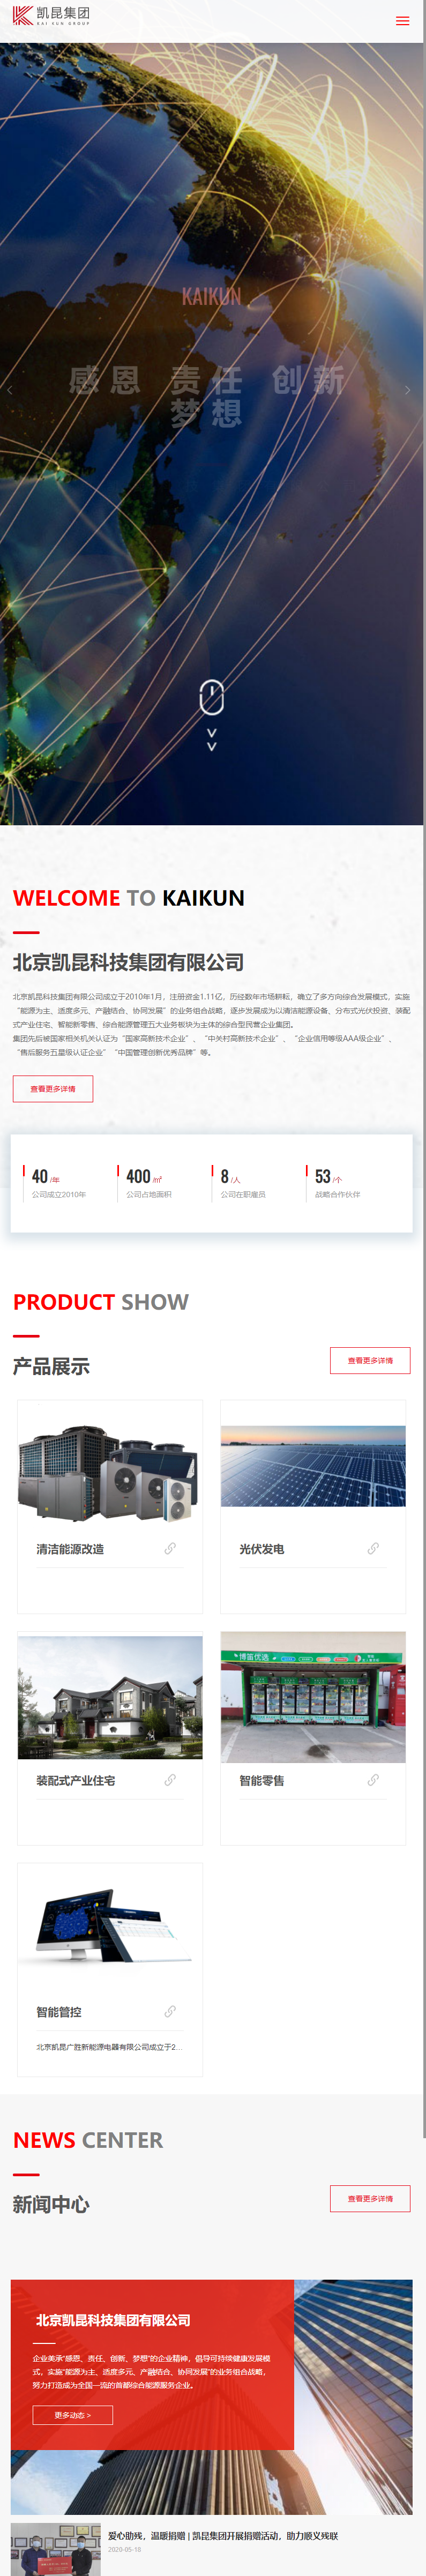 北京凯昆科技集团有限公司网站案例